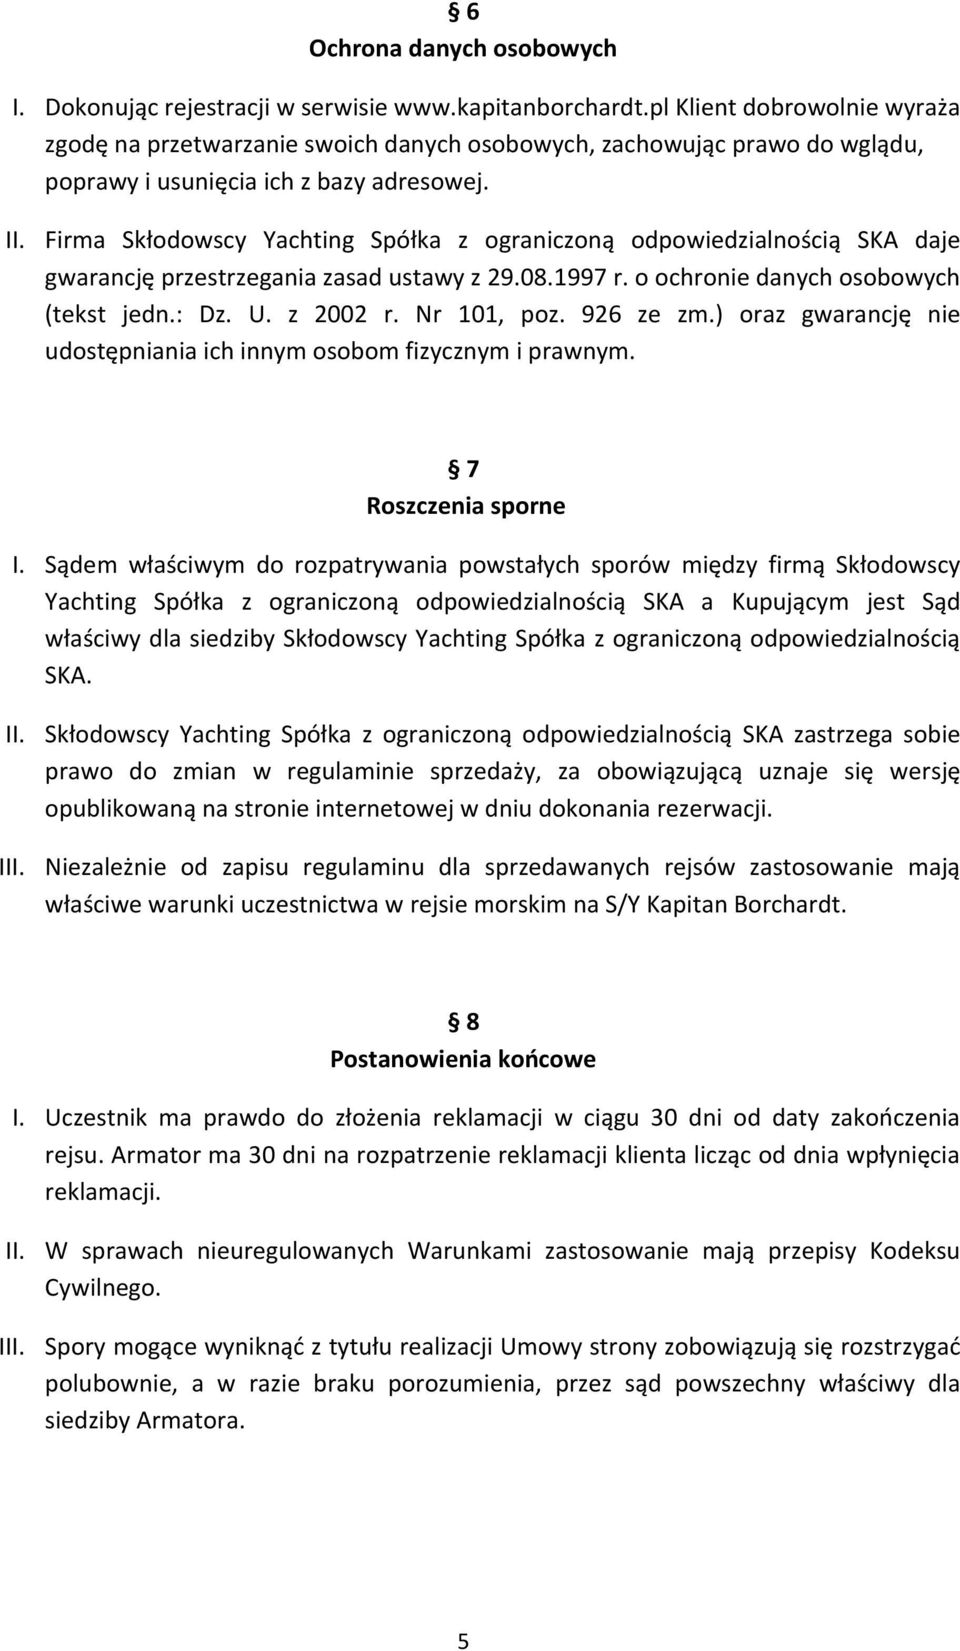 Firma Skłodowscy Yachting Spółka z ograniczoną odpowiedzialnością SKA daje gwarancję przestrzegania zasad ustawy z 29.08.1997 r. o ochronie danych osobowych (tekst jedn.: Dz. U. z 2002 r. Nr 101, poz.